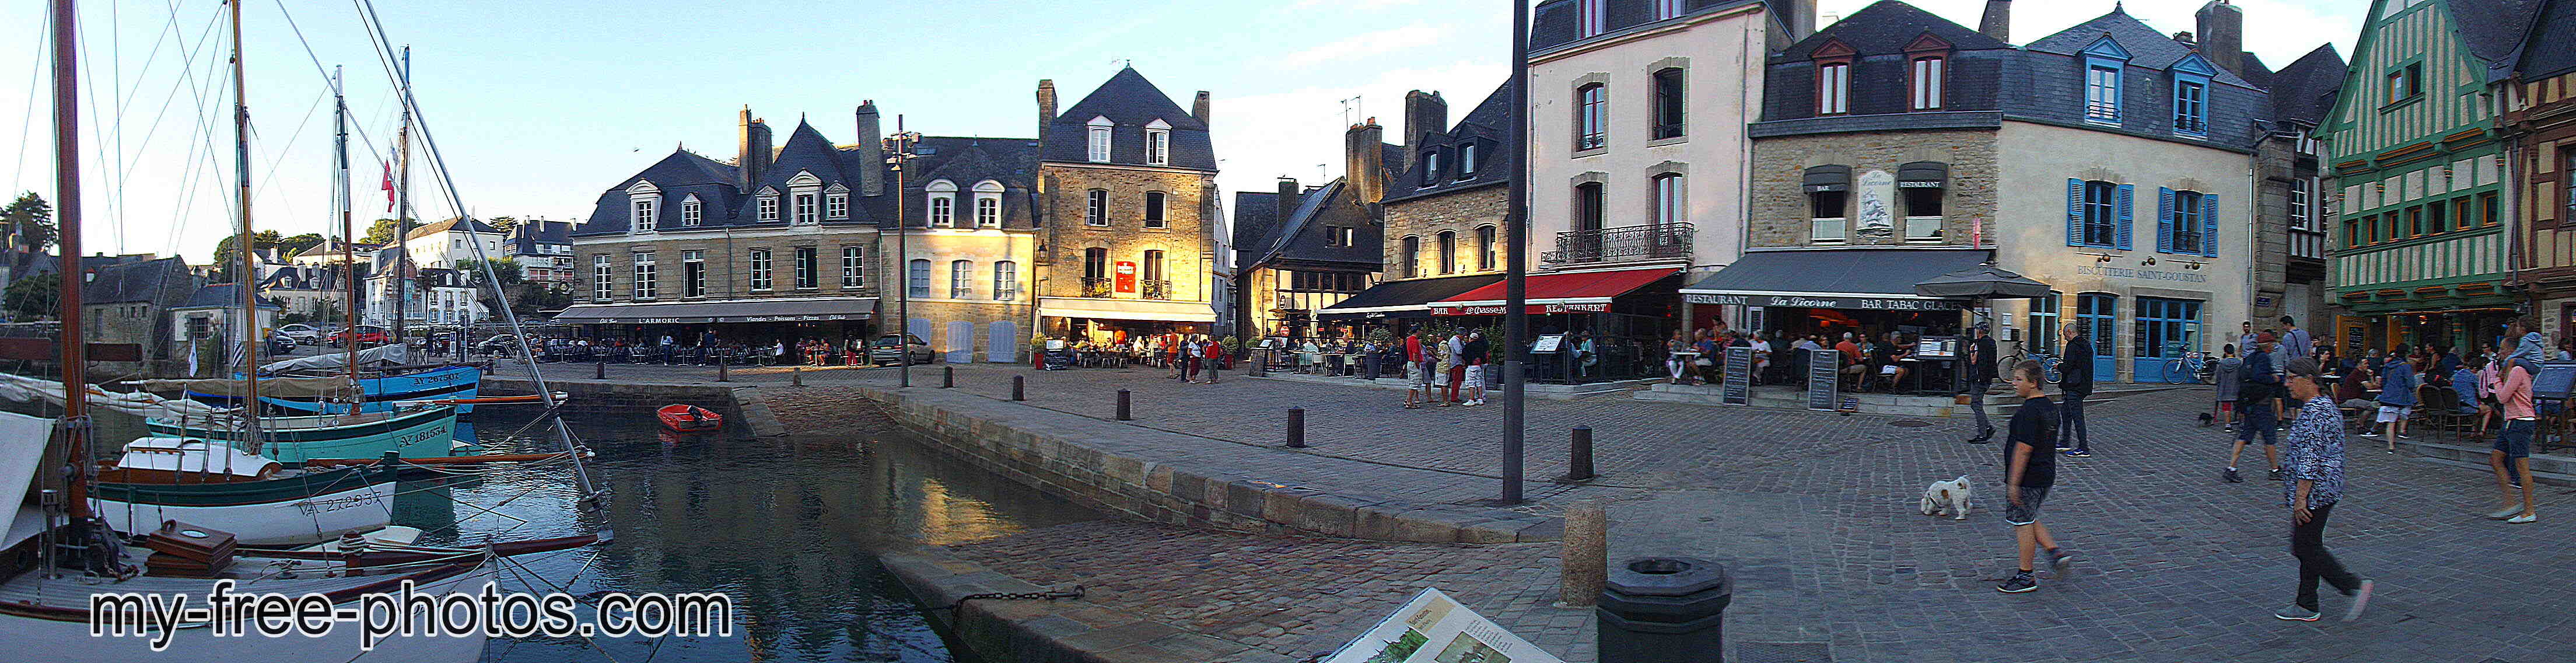 Auray, France